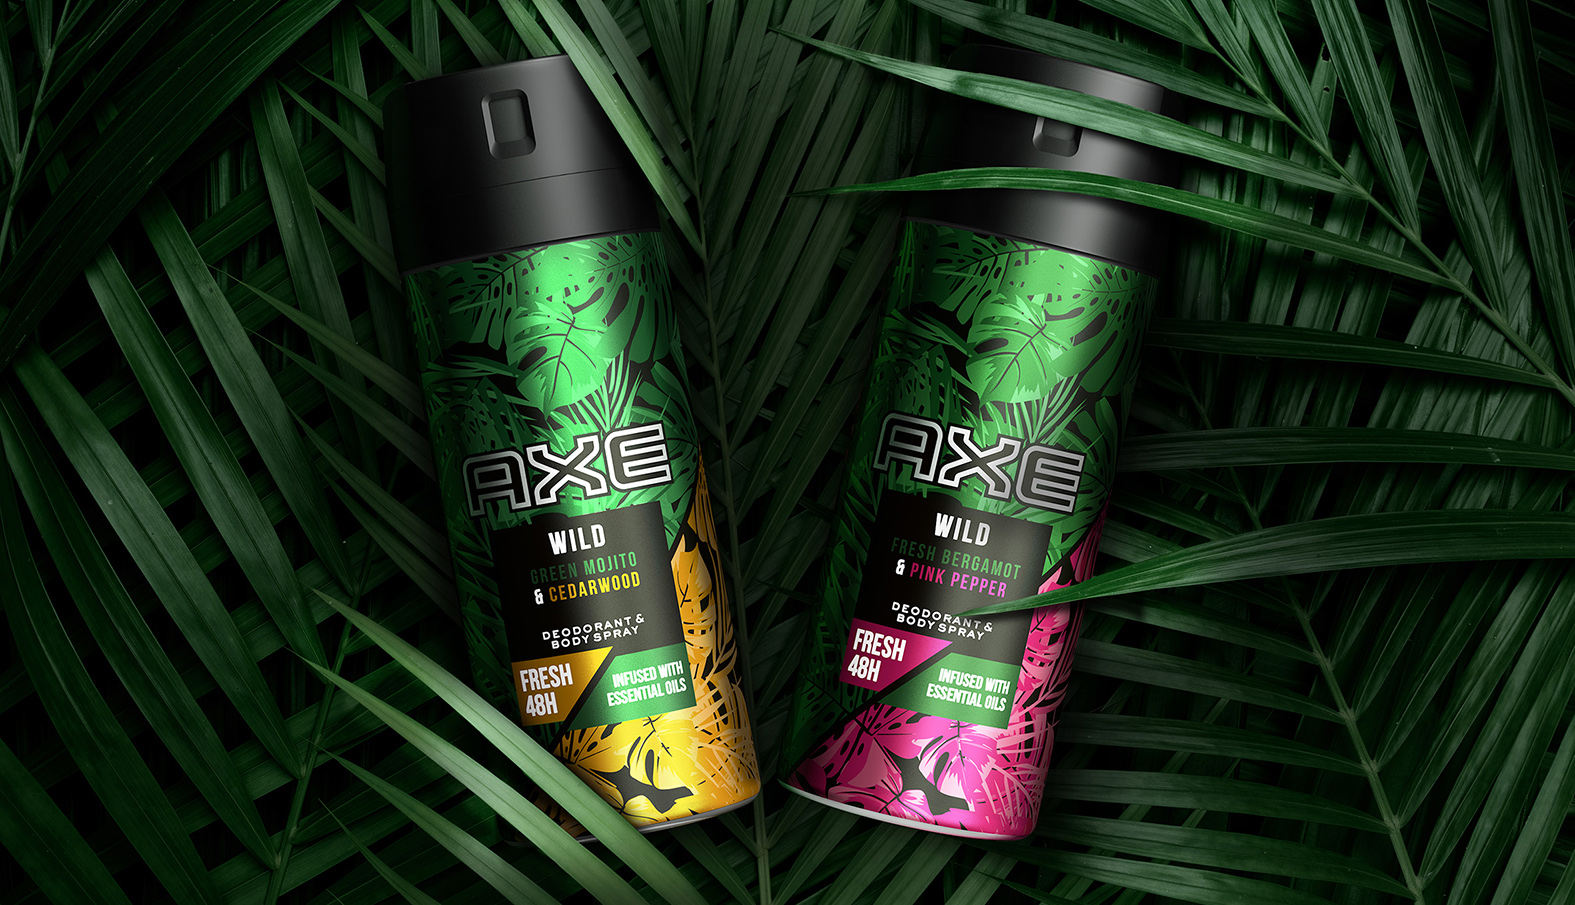 AXE WILD系列身体喷雾剂和洗发水沐浴露产品包装设计，释放自然野性